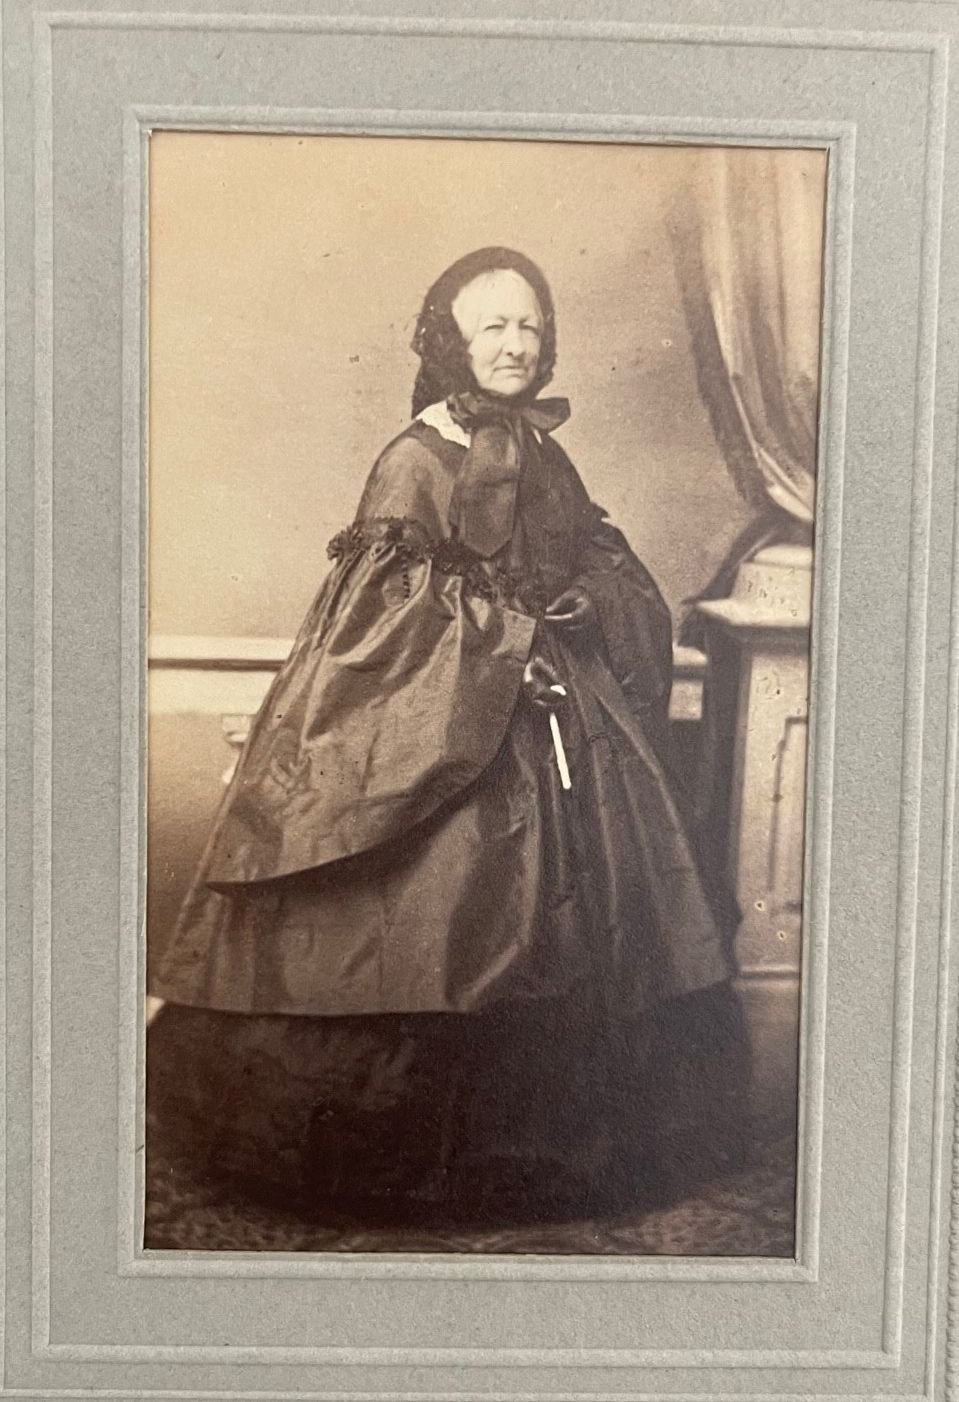 Fotografie, P. Weisbrod, Amalie Gräfin zu Solms-Rödelheim, geborene Gräfin zu Erbach-Schönberg, ca. 1865. (Taunus-Rhein-Main - Regionalgeschichtliche Sammlung Dr. Stefan Naas CC BY-NC-SA)